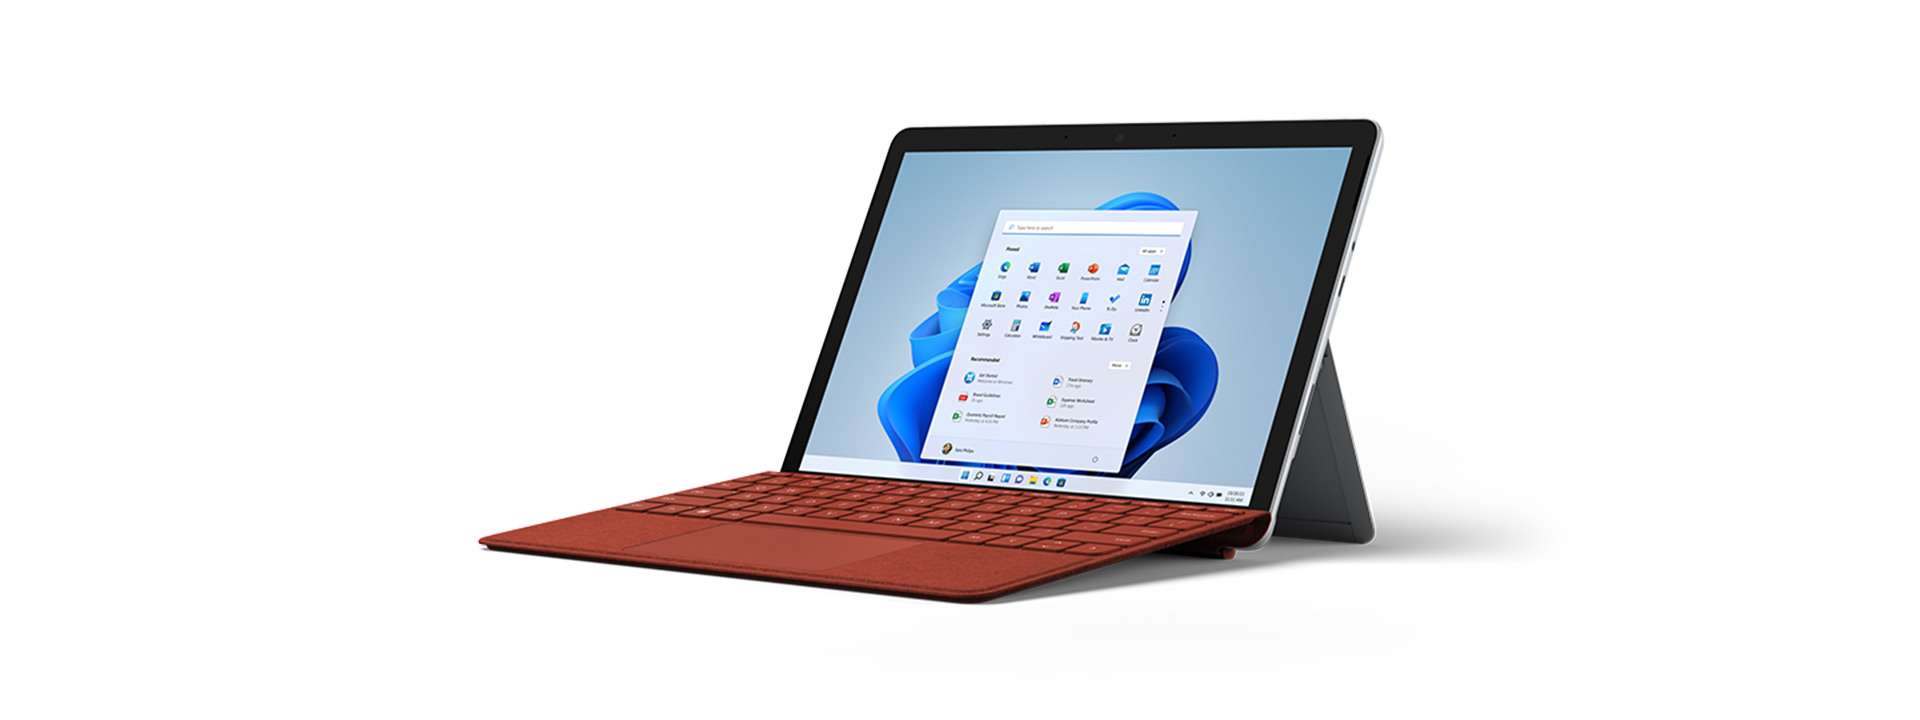 キックスタンド モードの Surface タイプ カバー付き Surface Go 3。
